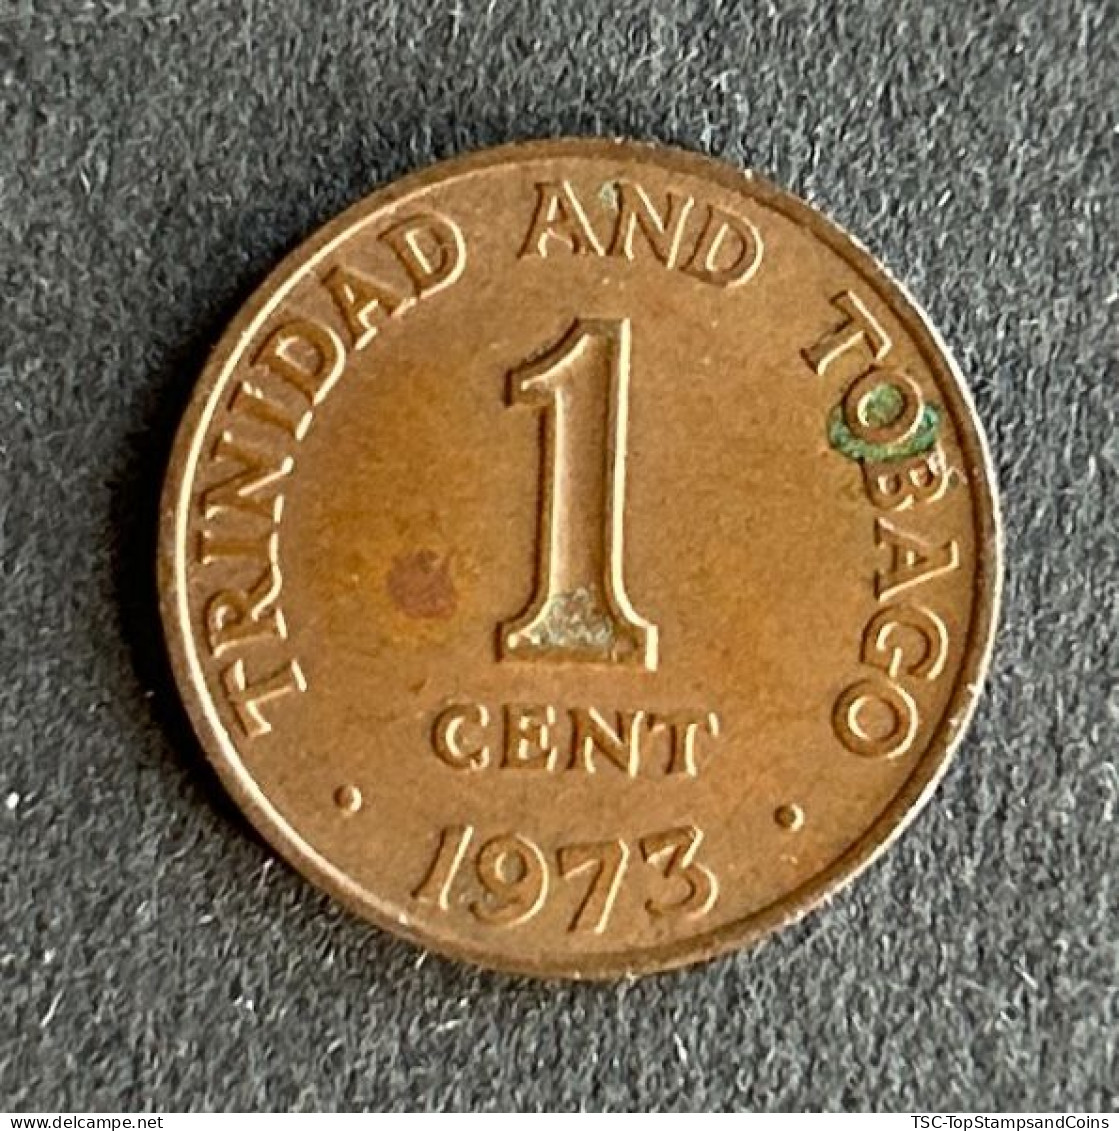 $$T&B400 - Elizabeth II - Coat Of Arms - 1 Cent Coin - Trinidad & Tobago - 1973 - Trindad & Tobago